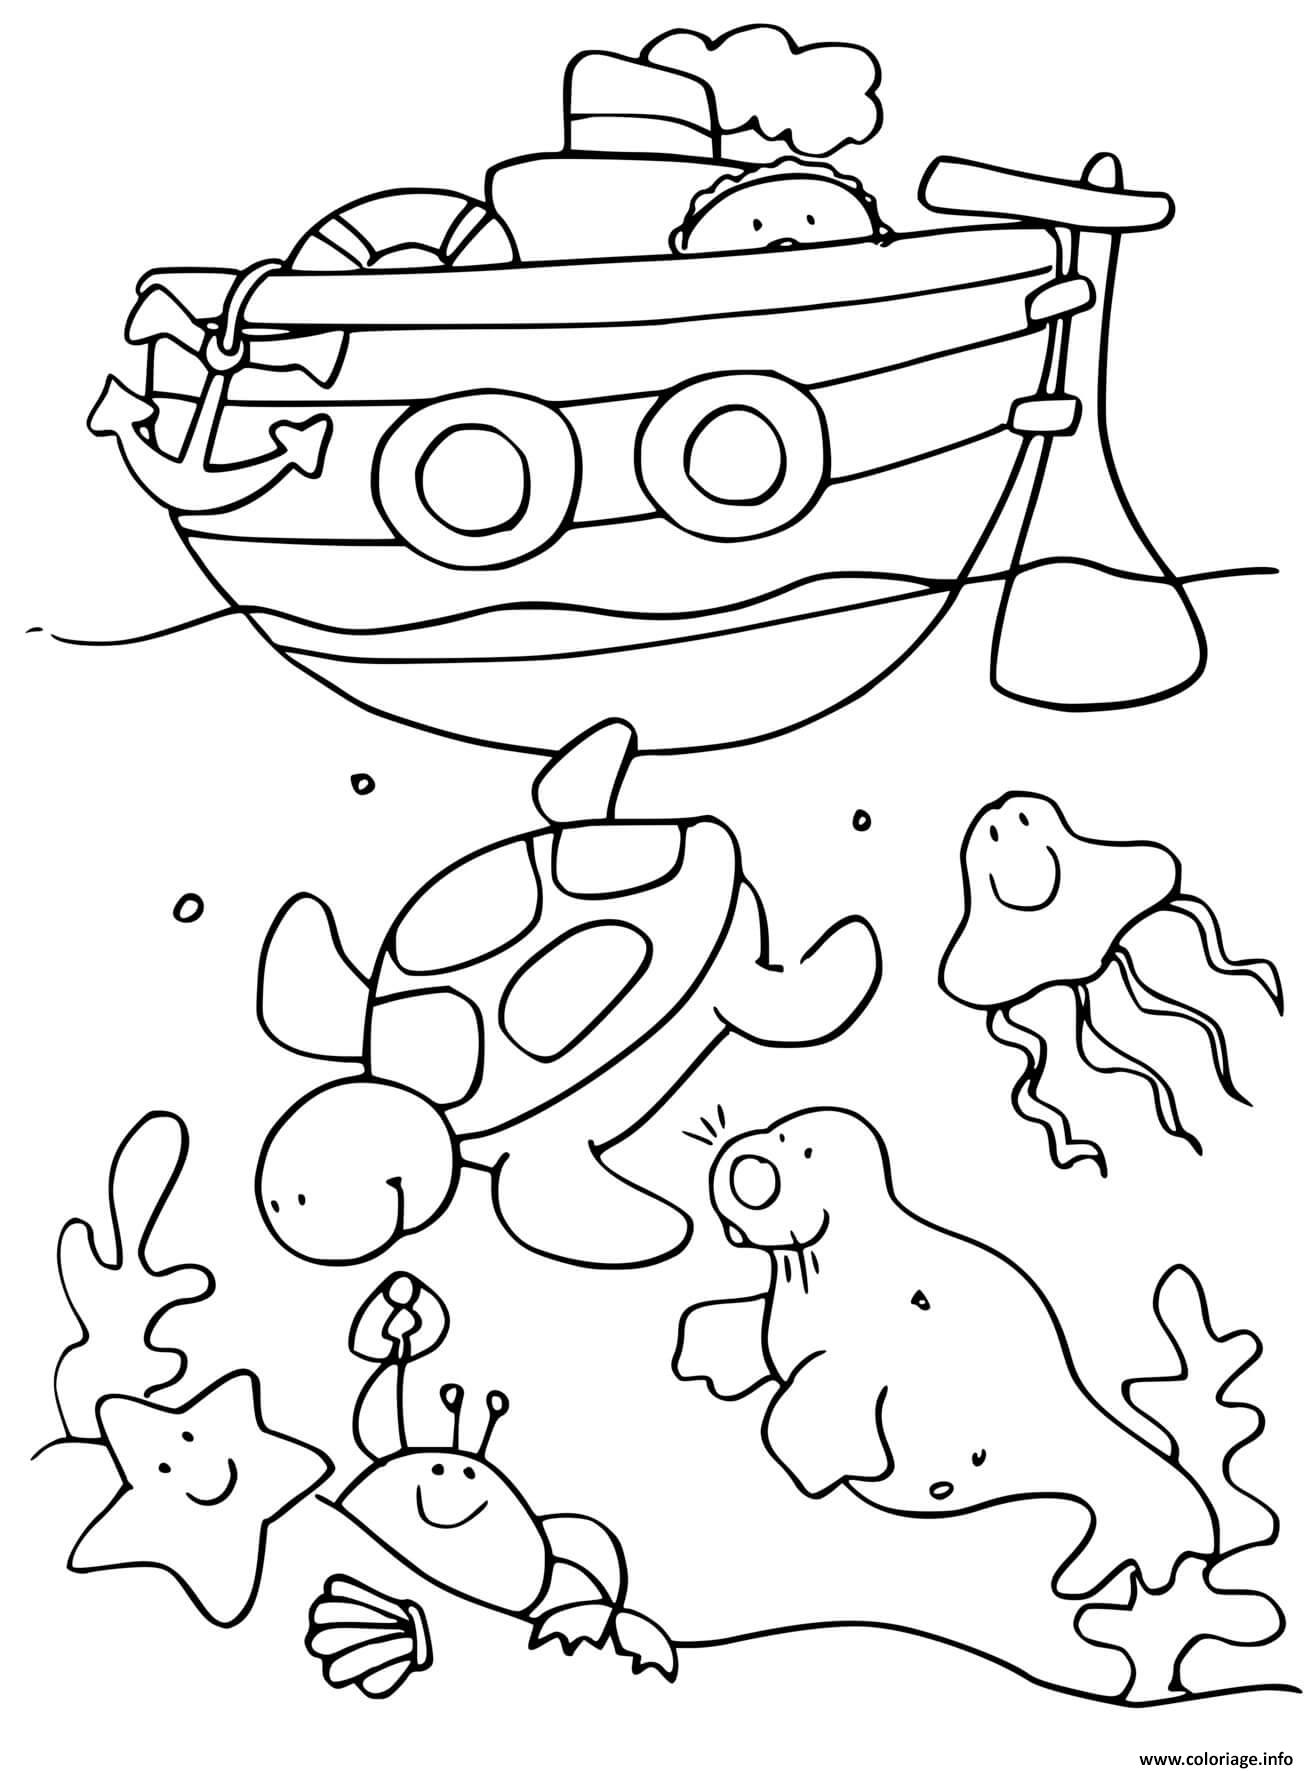 Coloriage Fond De Mer Et Animaux Marins Avec Bateau De Mer Dessin à Imprimer